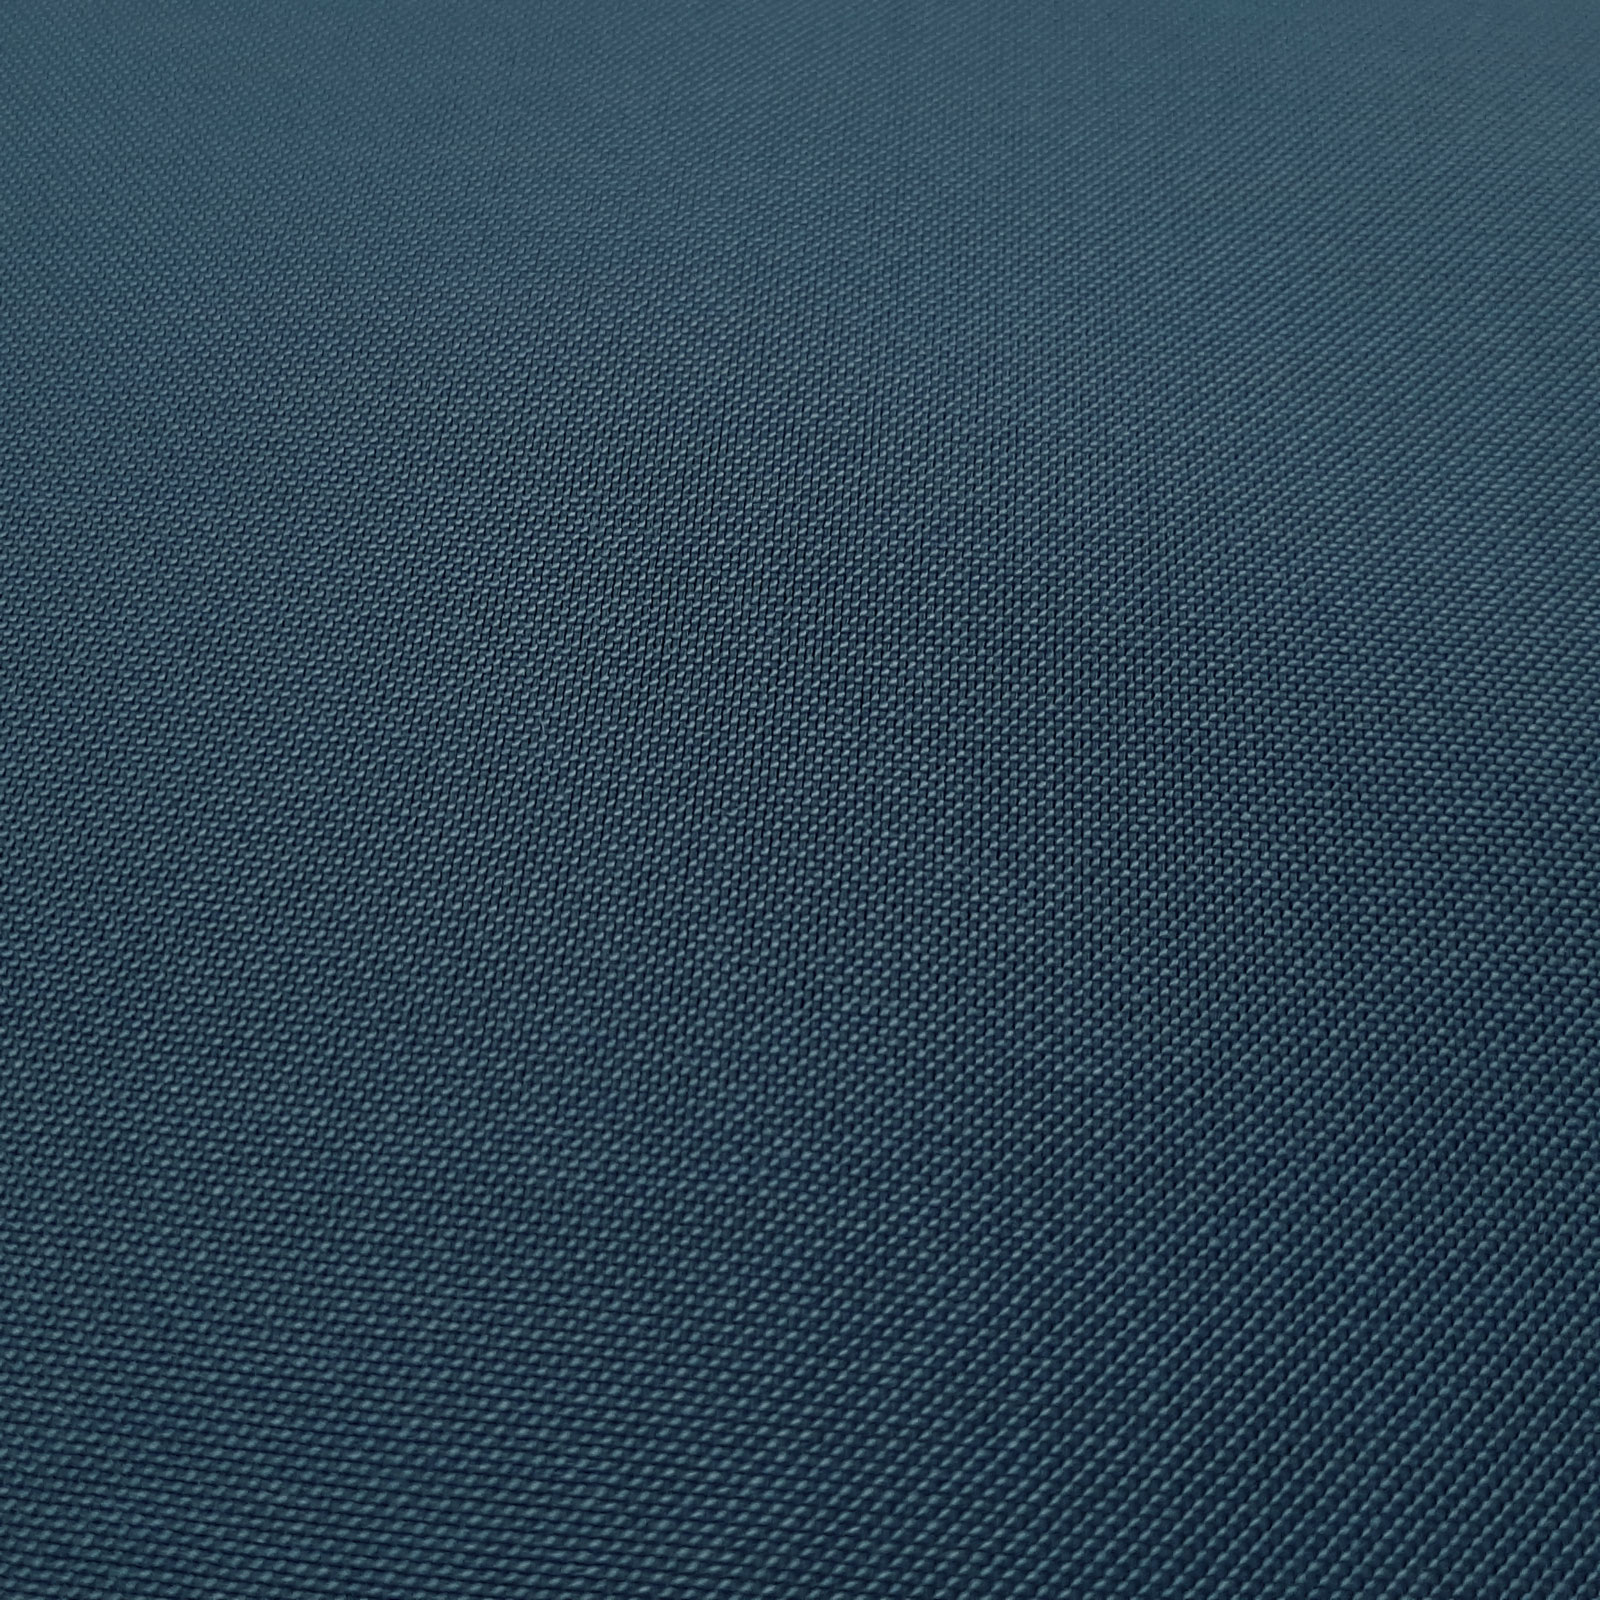 Zinos - tecido Cordura® robusto - Azul Escuro